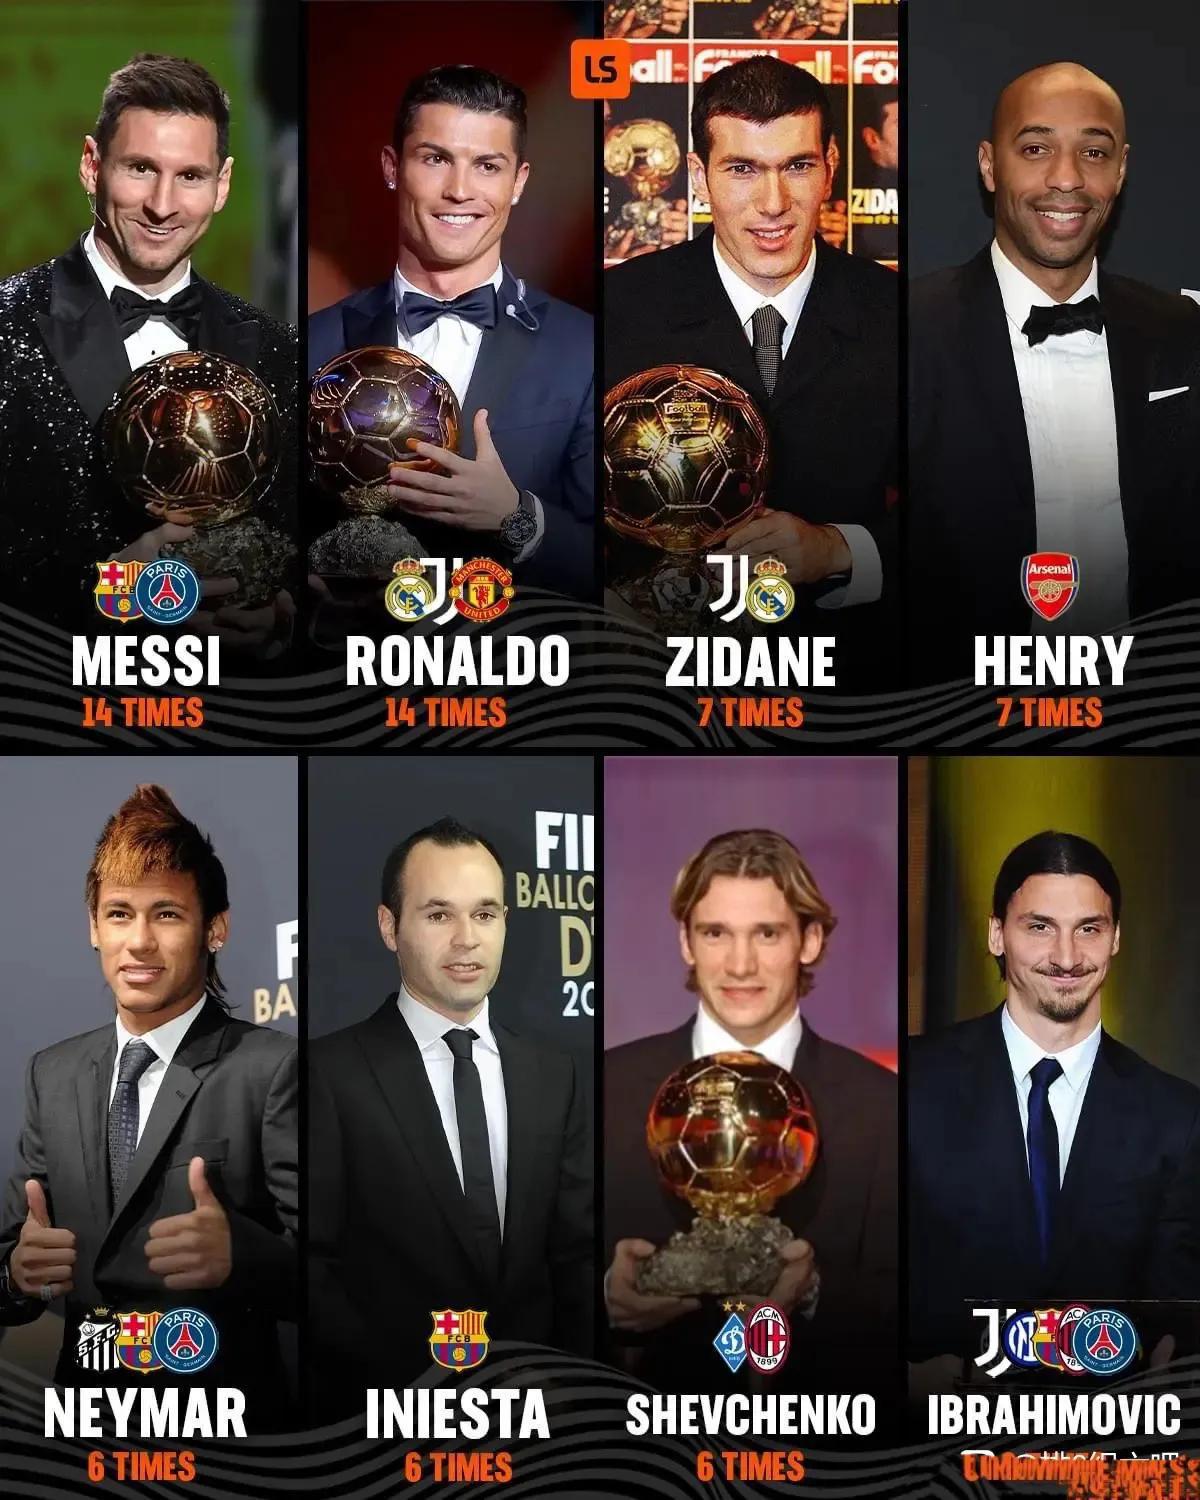 金球奖综合实力最强的球星，入选前十次数排名。

梅西总共14次入选前十，几乎年年(1)